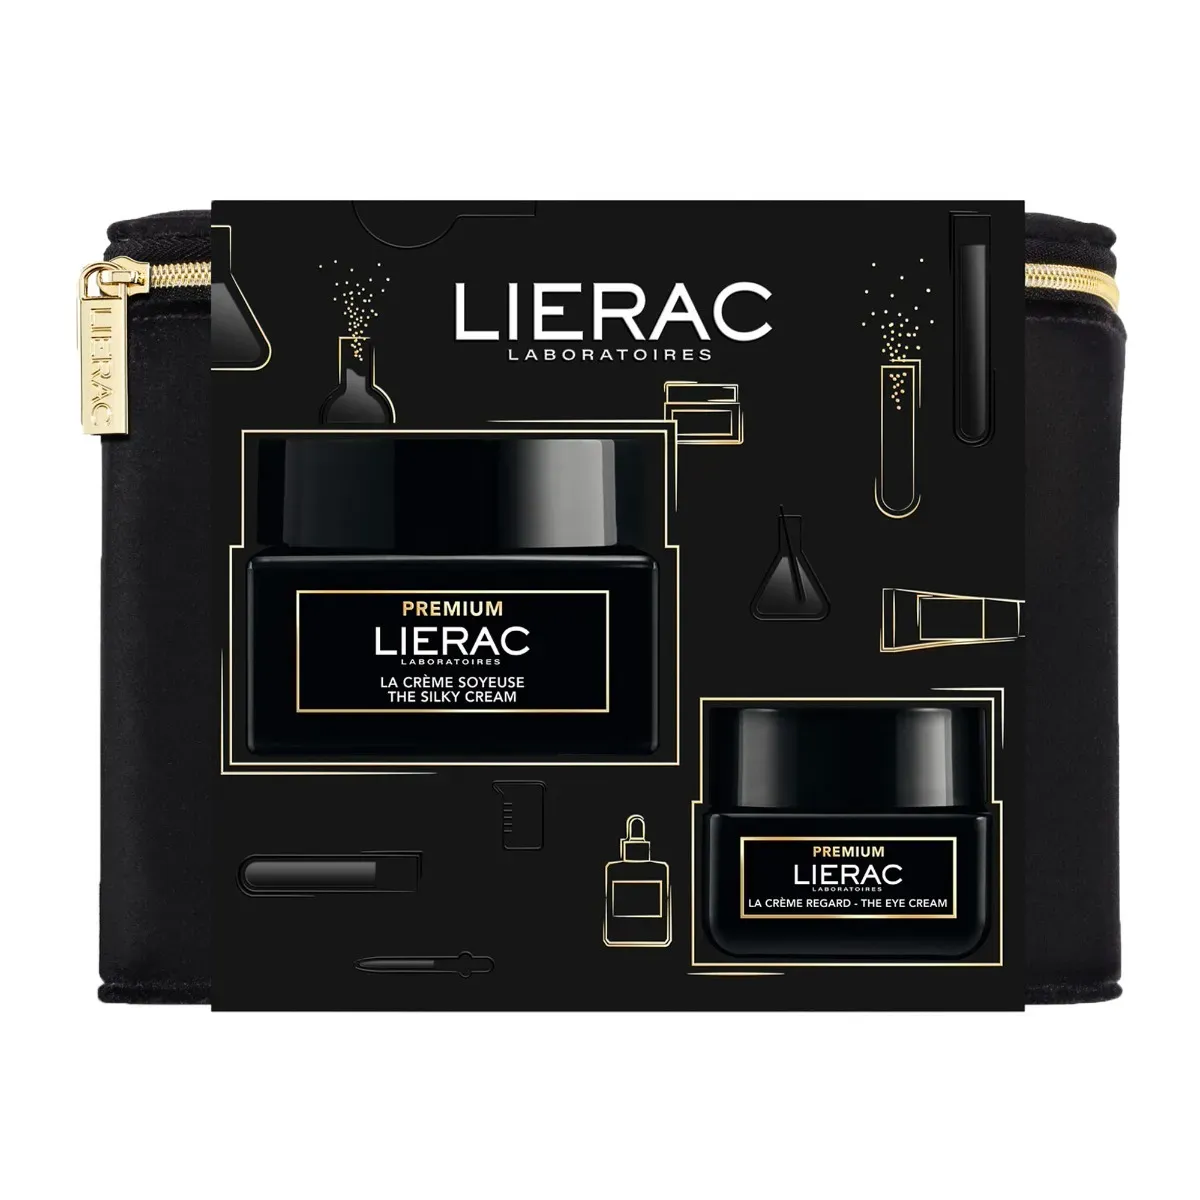 LIERAC Premium zestaw krem jedwabisty, krem pod oczy absolutne działanie anti-aging, 50 ml + 15 ml